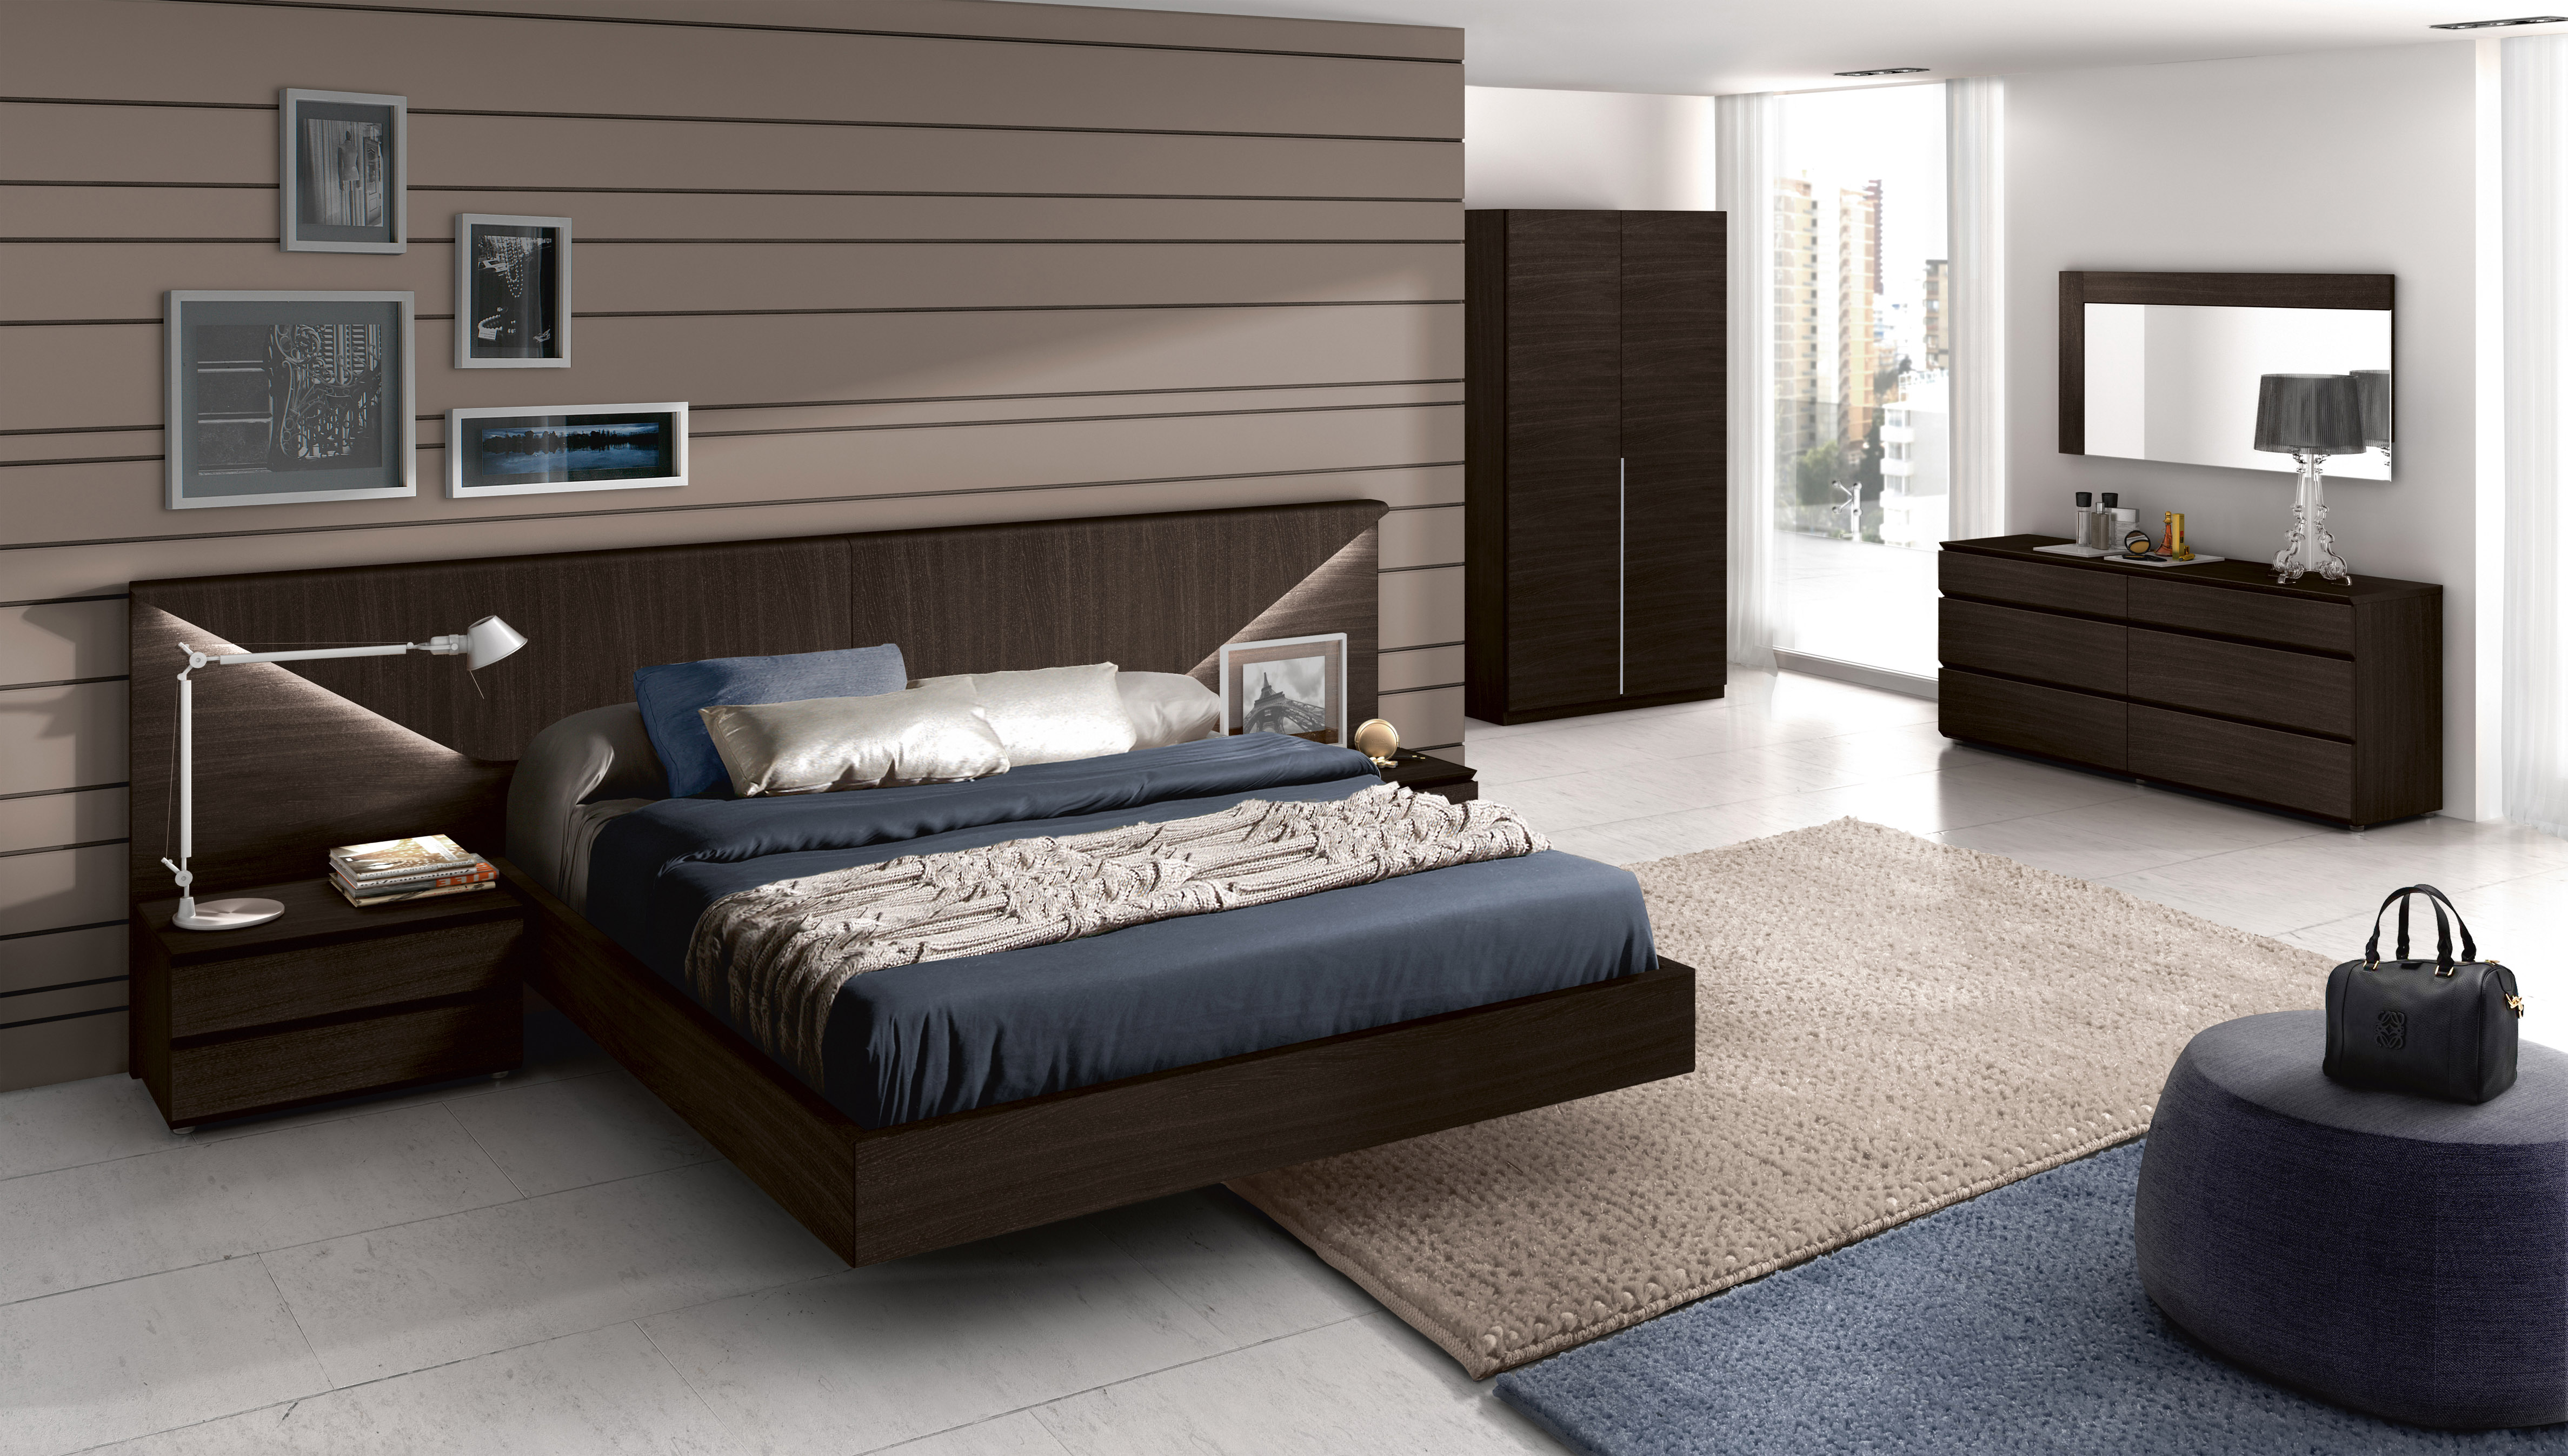 luxury wooden bedroom furniture